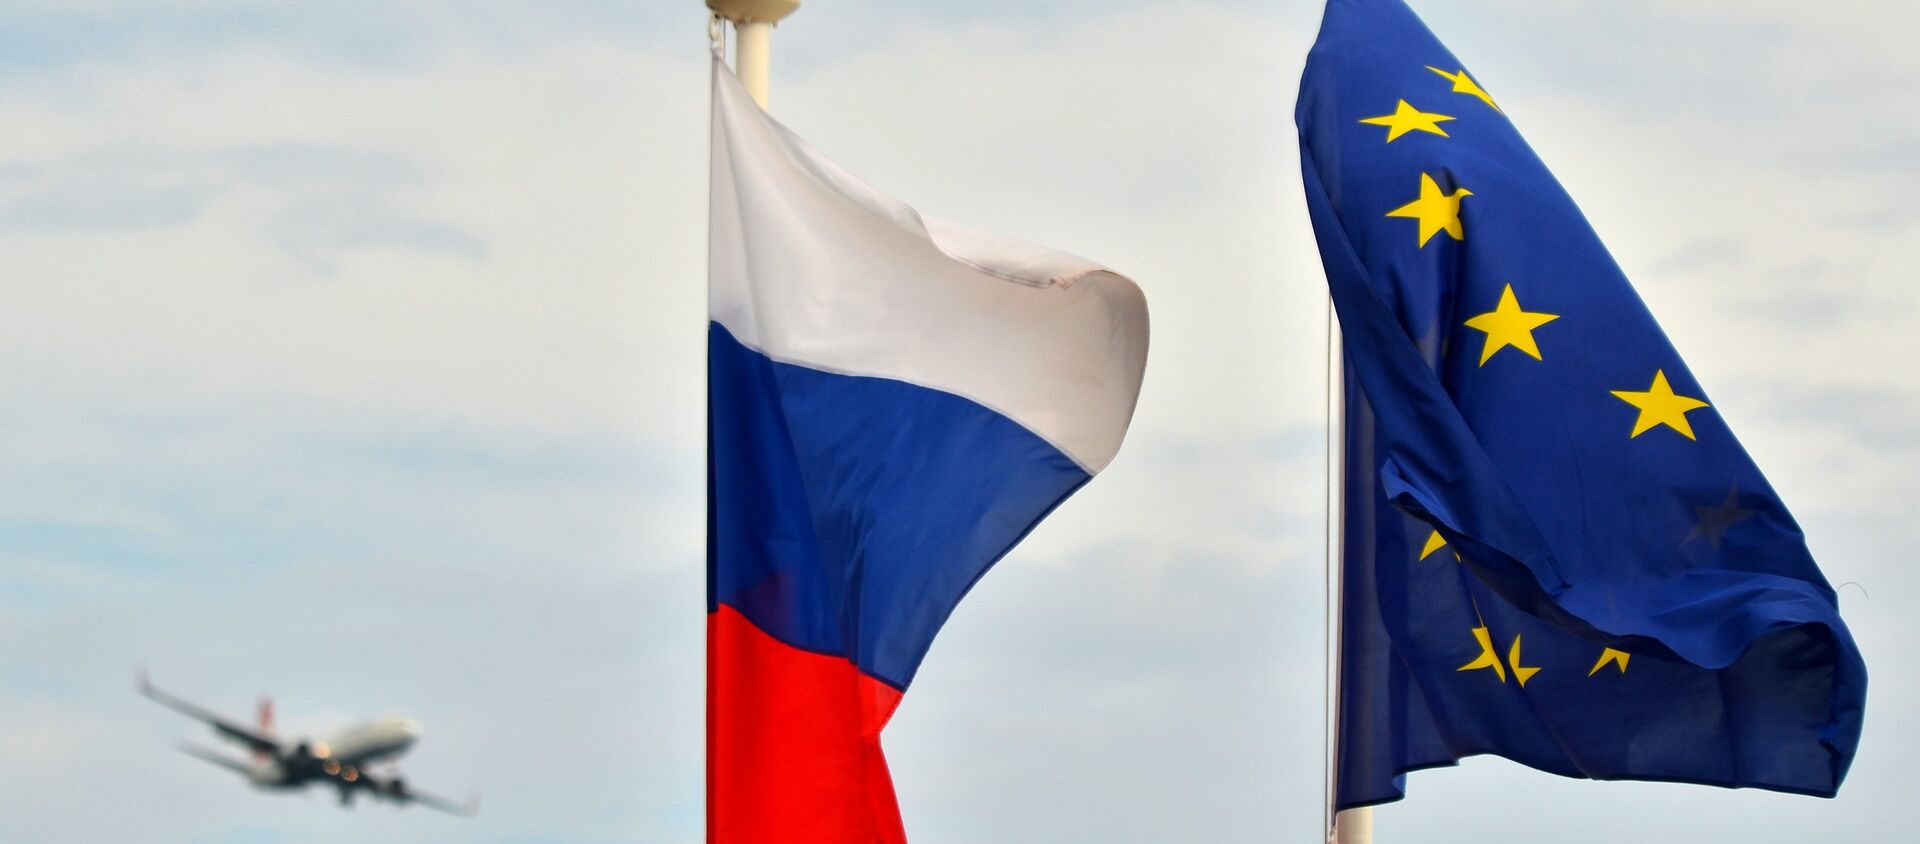 Флаги России, ЕС, Франции и герб Ниццы на набережной Ниццы - Sputnik Latvija, 1920, 28.02.2021